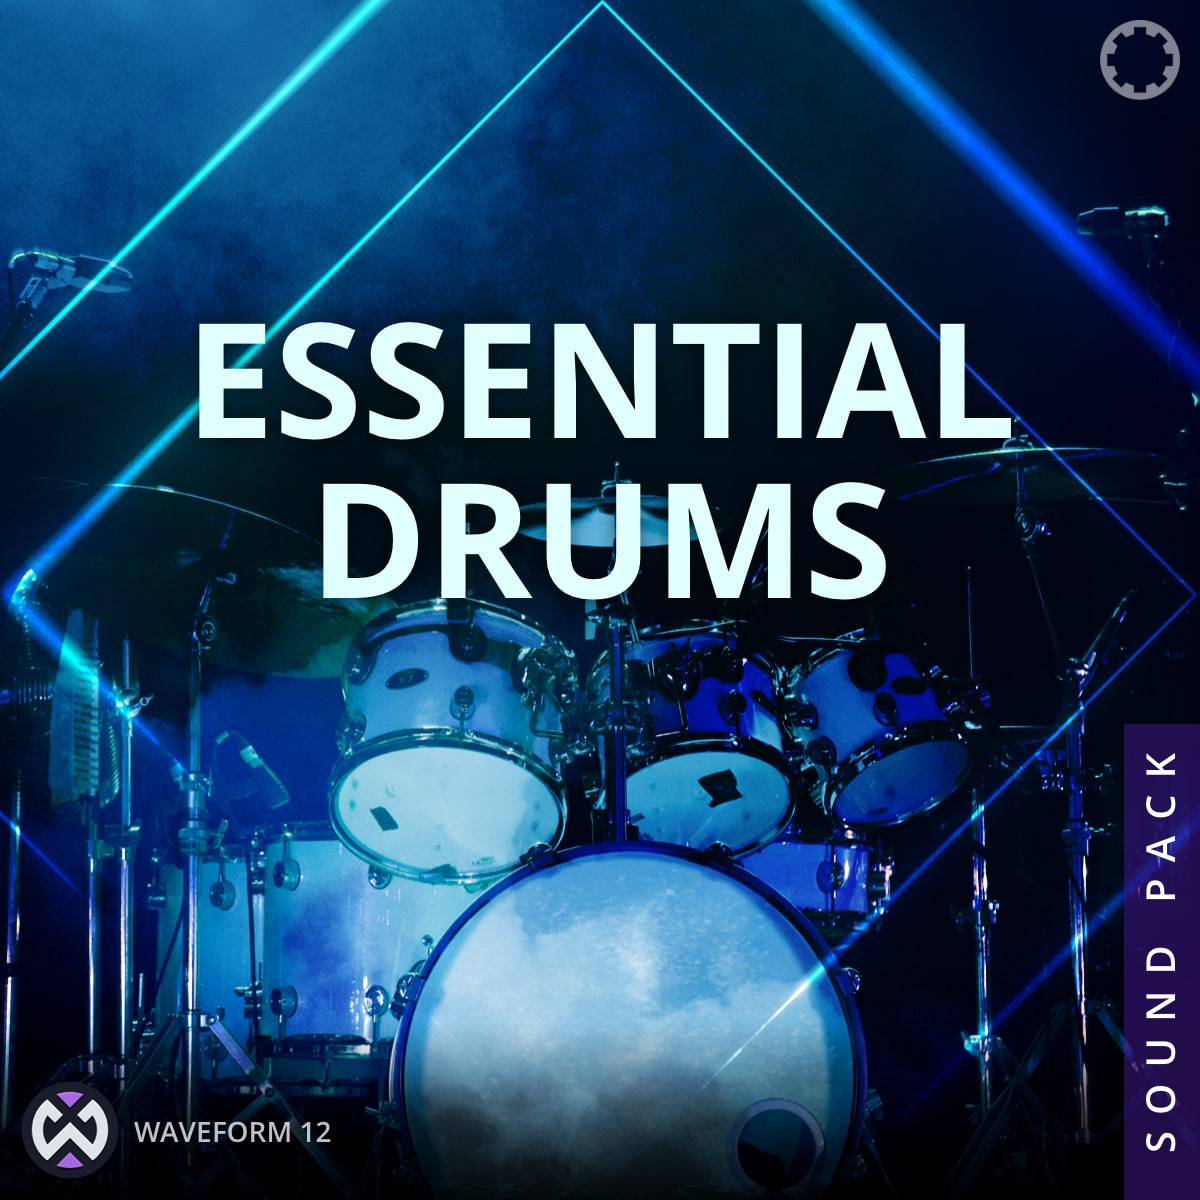 essential drums album cover